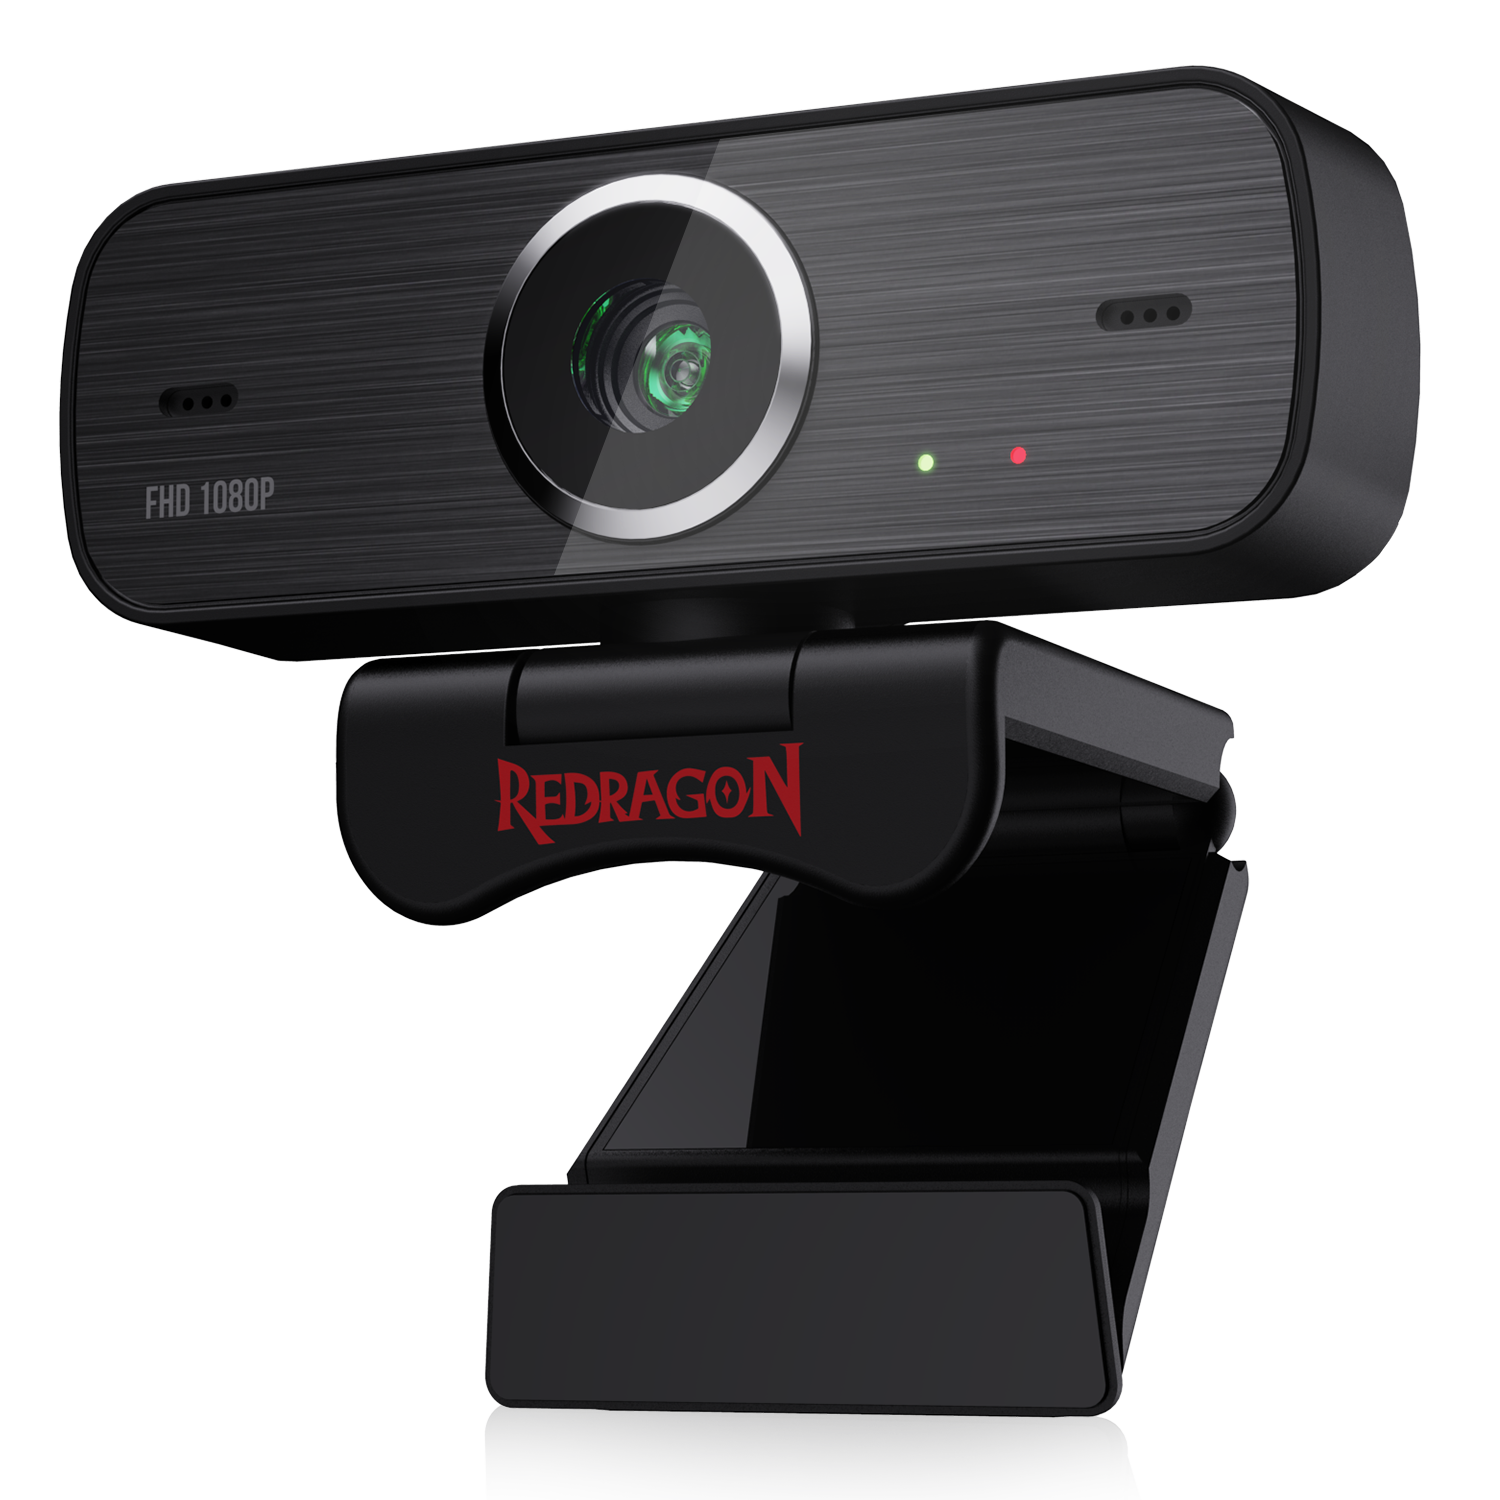 External Webcam vs Built-in Webcam, Why External Webcam Better